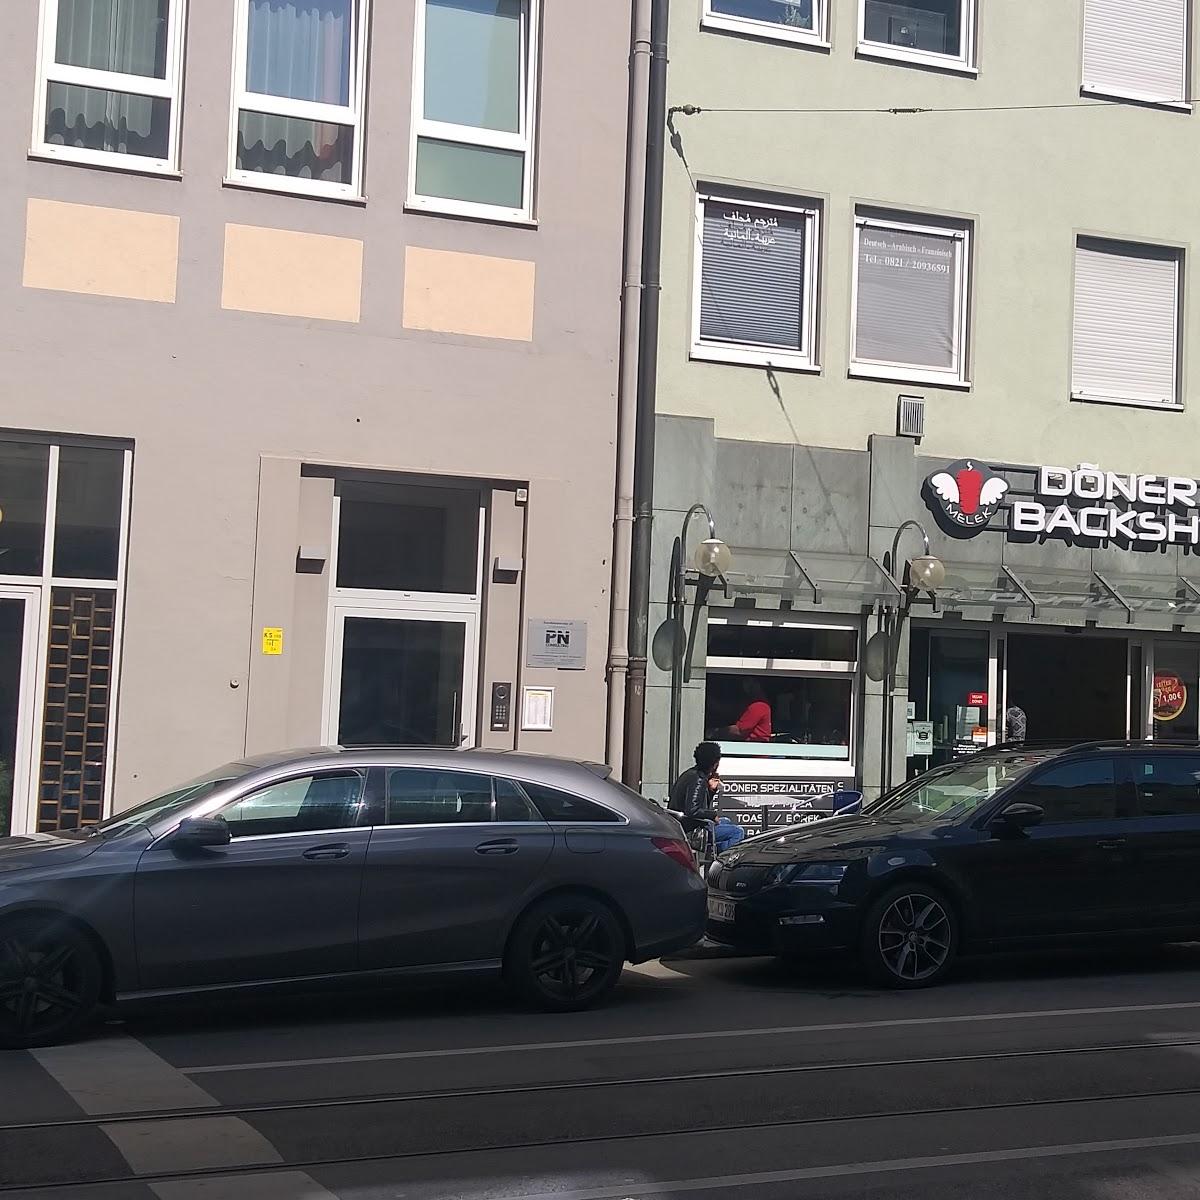 Restaurant "Melek Döner & Backshop" in Augsburg